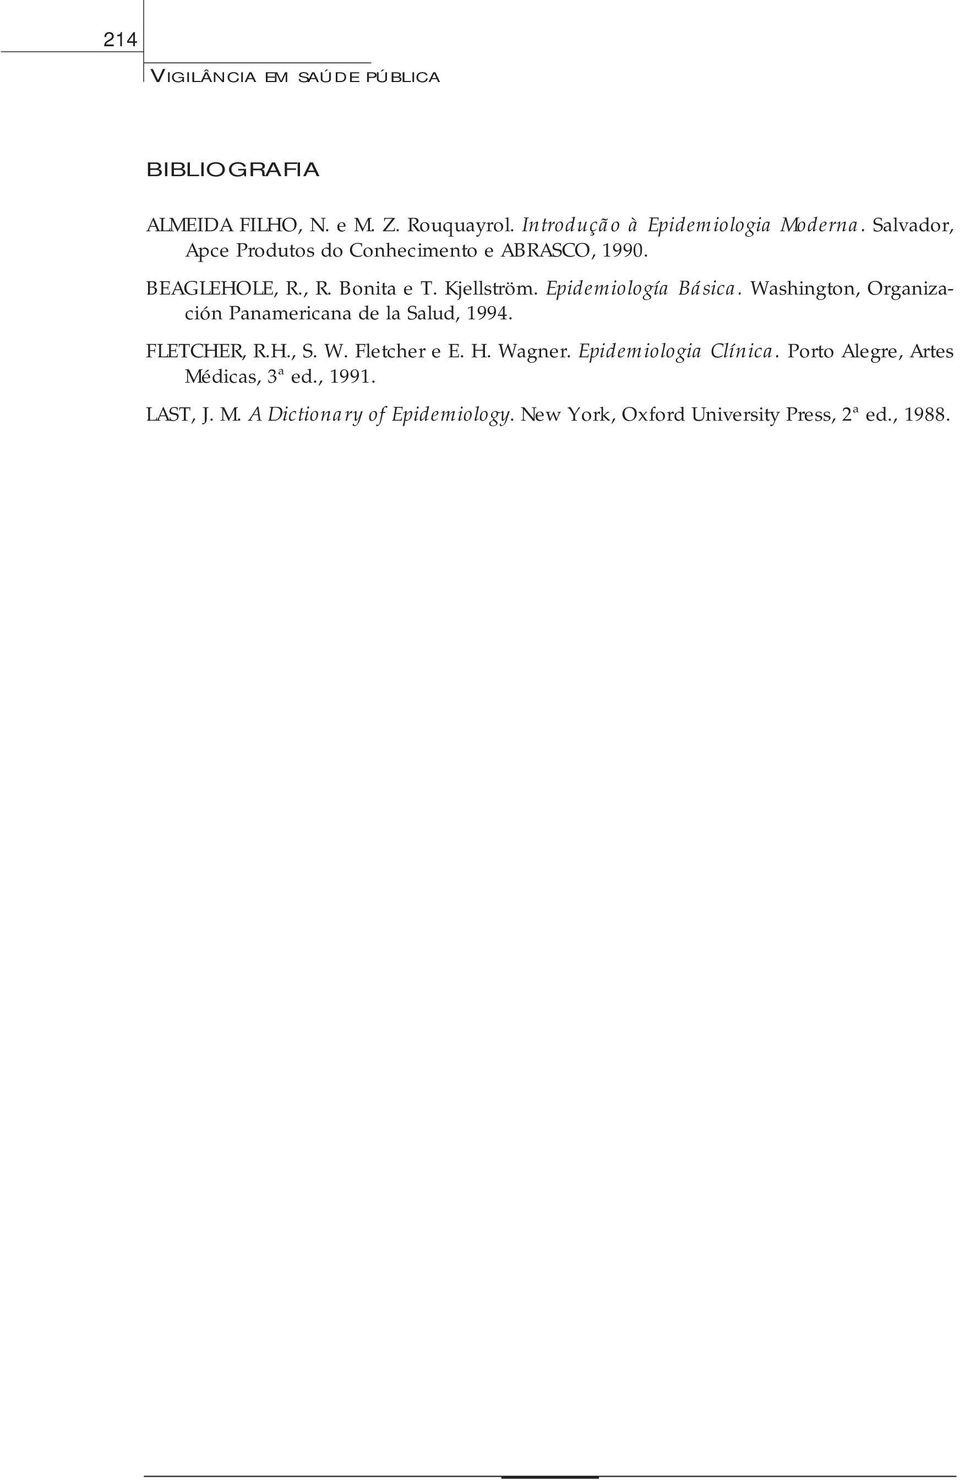 Washington, Organización Panamericana de la Salud, 1994. FLETCHER, R.H., S. W. Fletcher e E. H. Wagner. Epidemiologia Clínica.